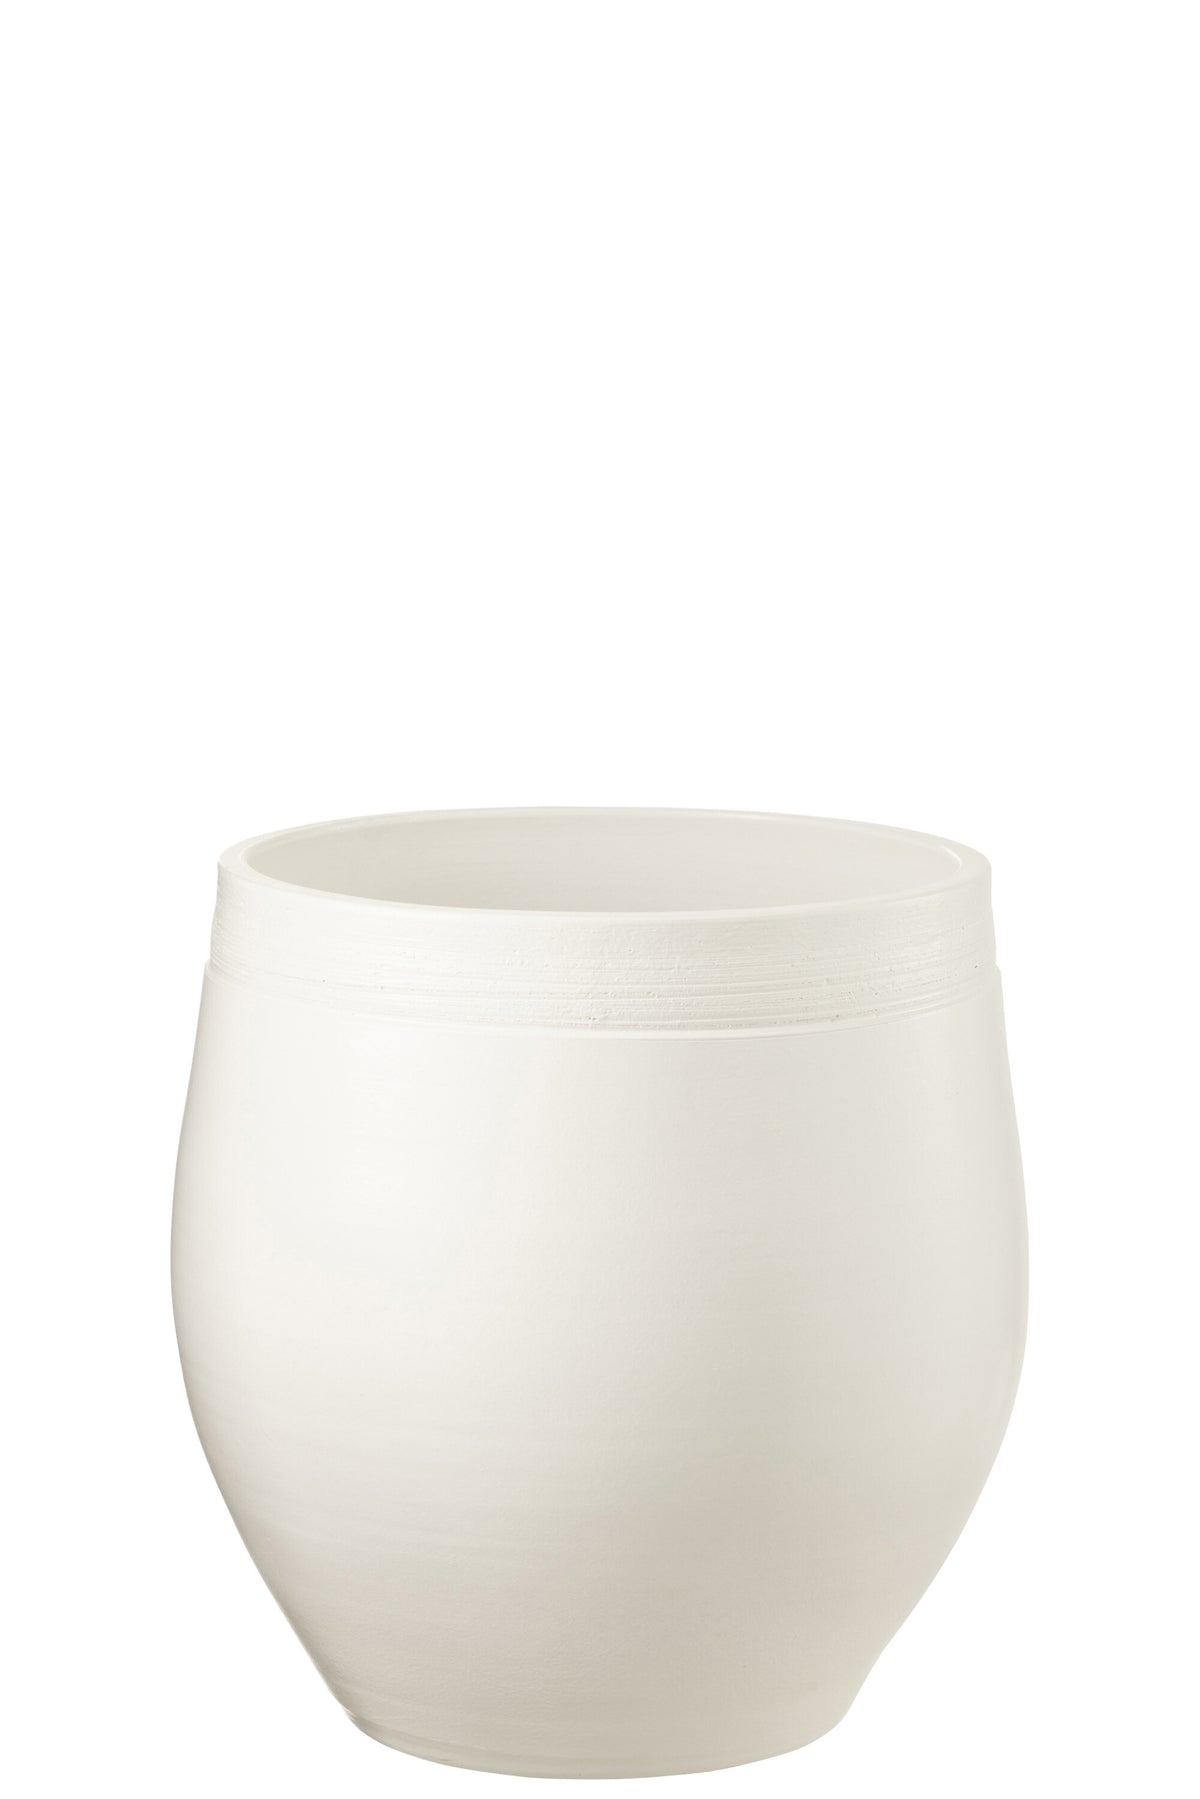 Pot de fleurs Gio White Xl - (34056)